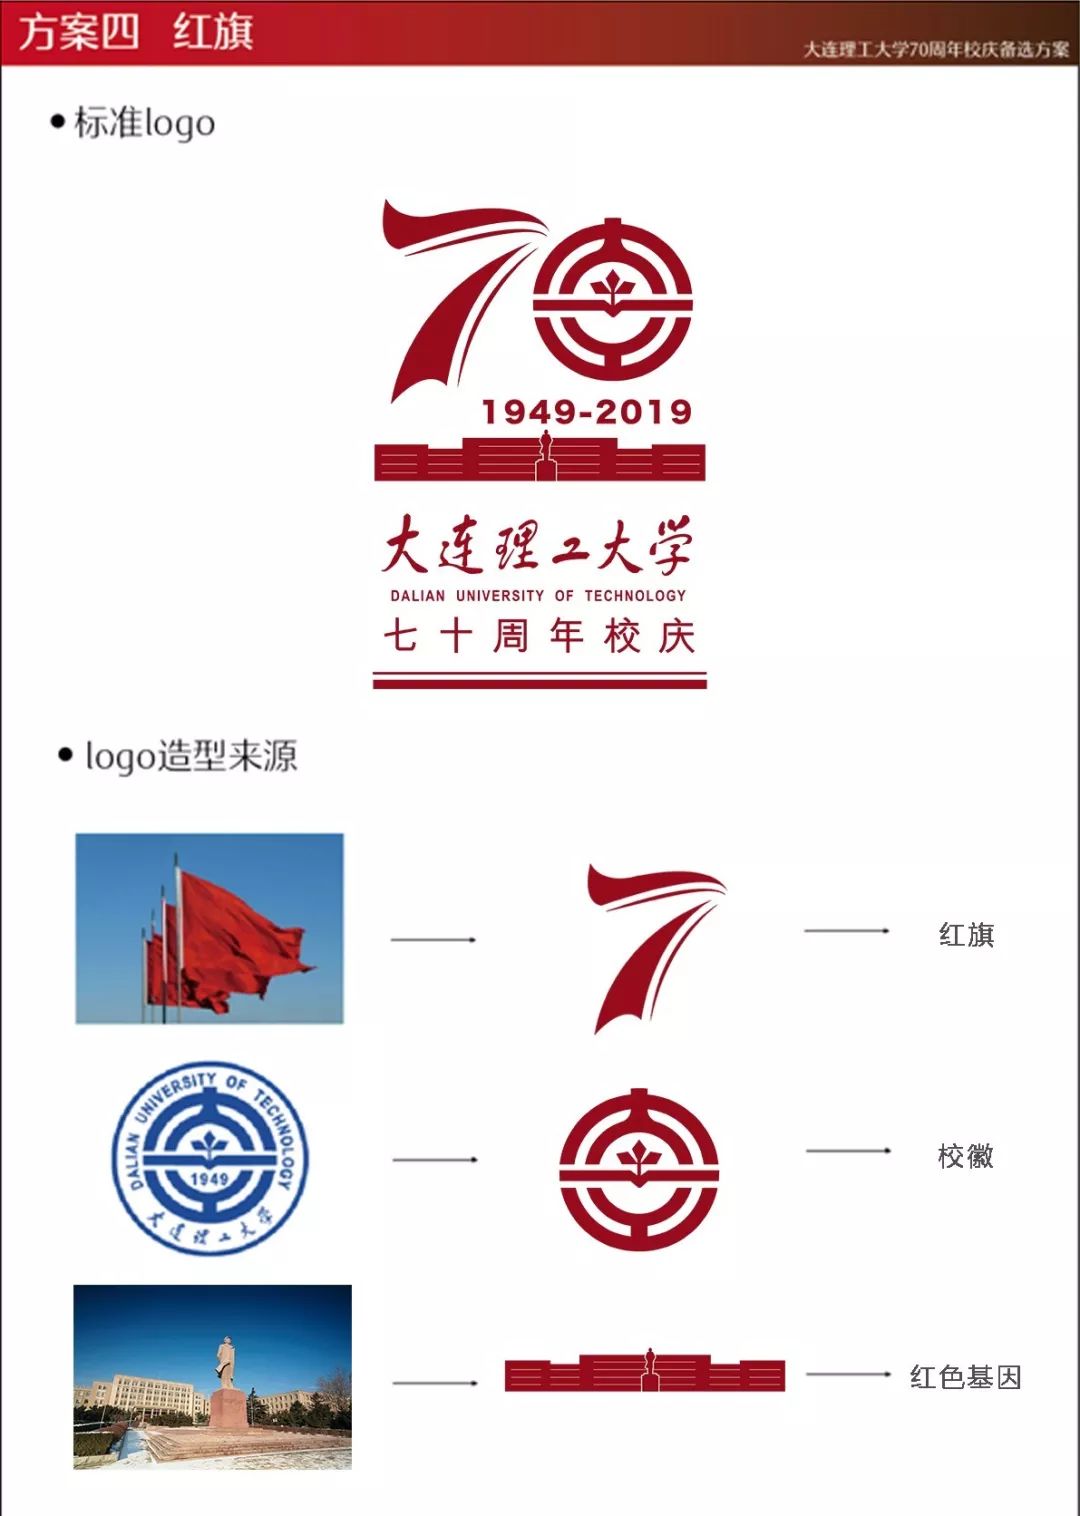 70周年校庆logo终选投票!